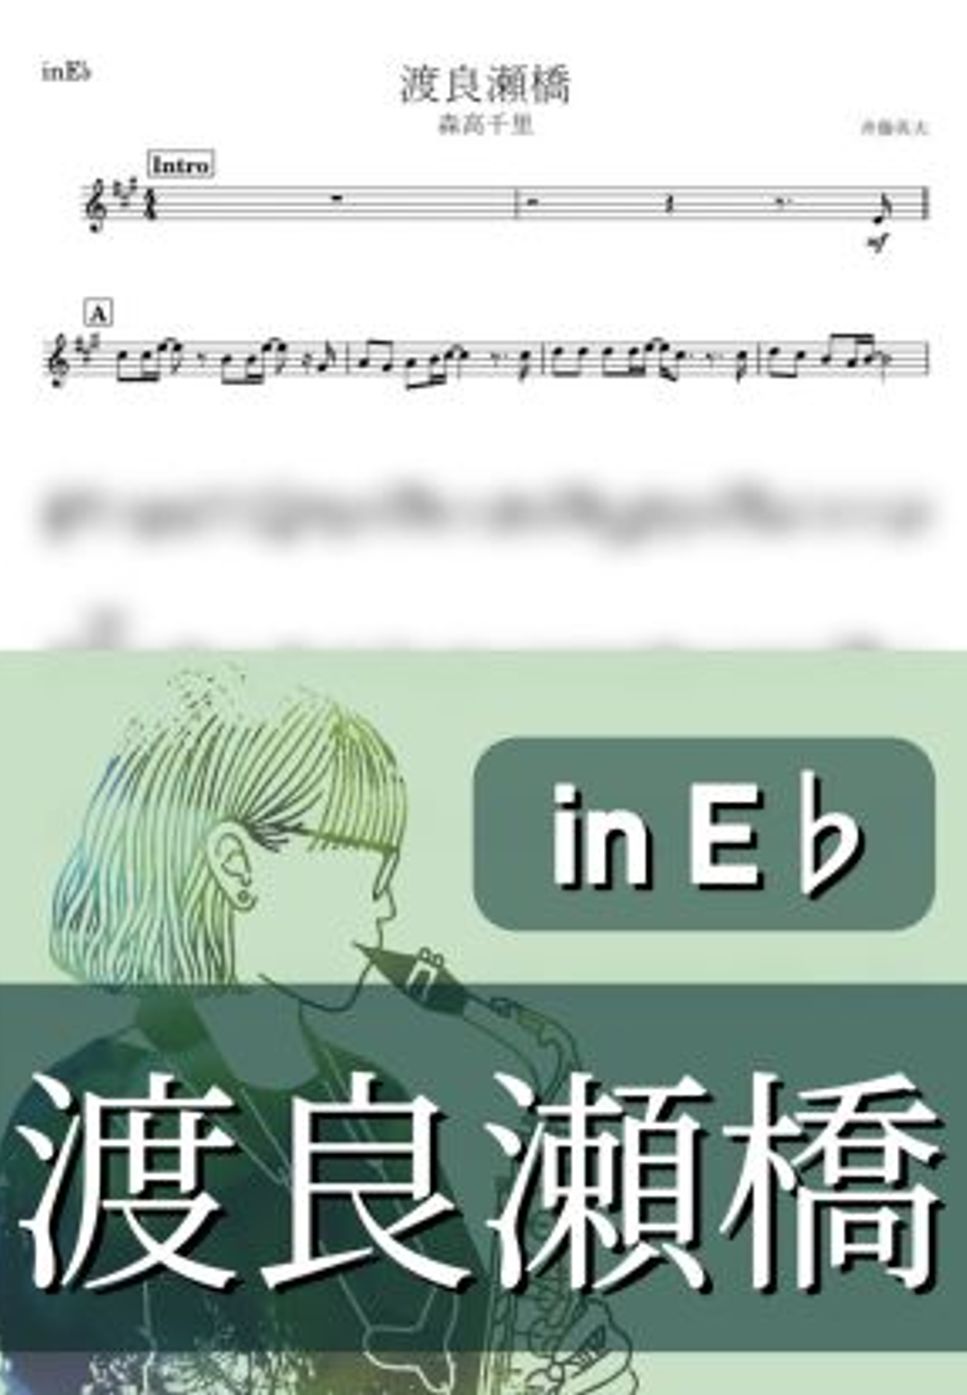 森高千里 - 渡良瀬橋 (E♭) by kanamusic